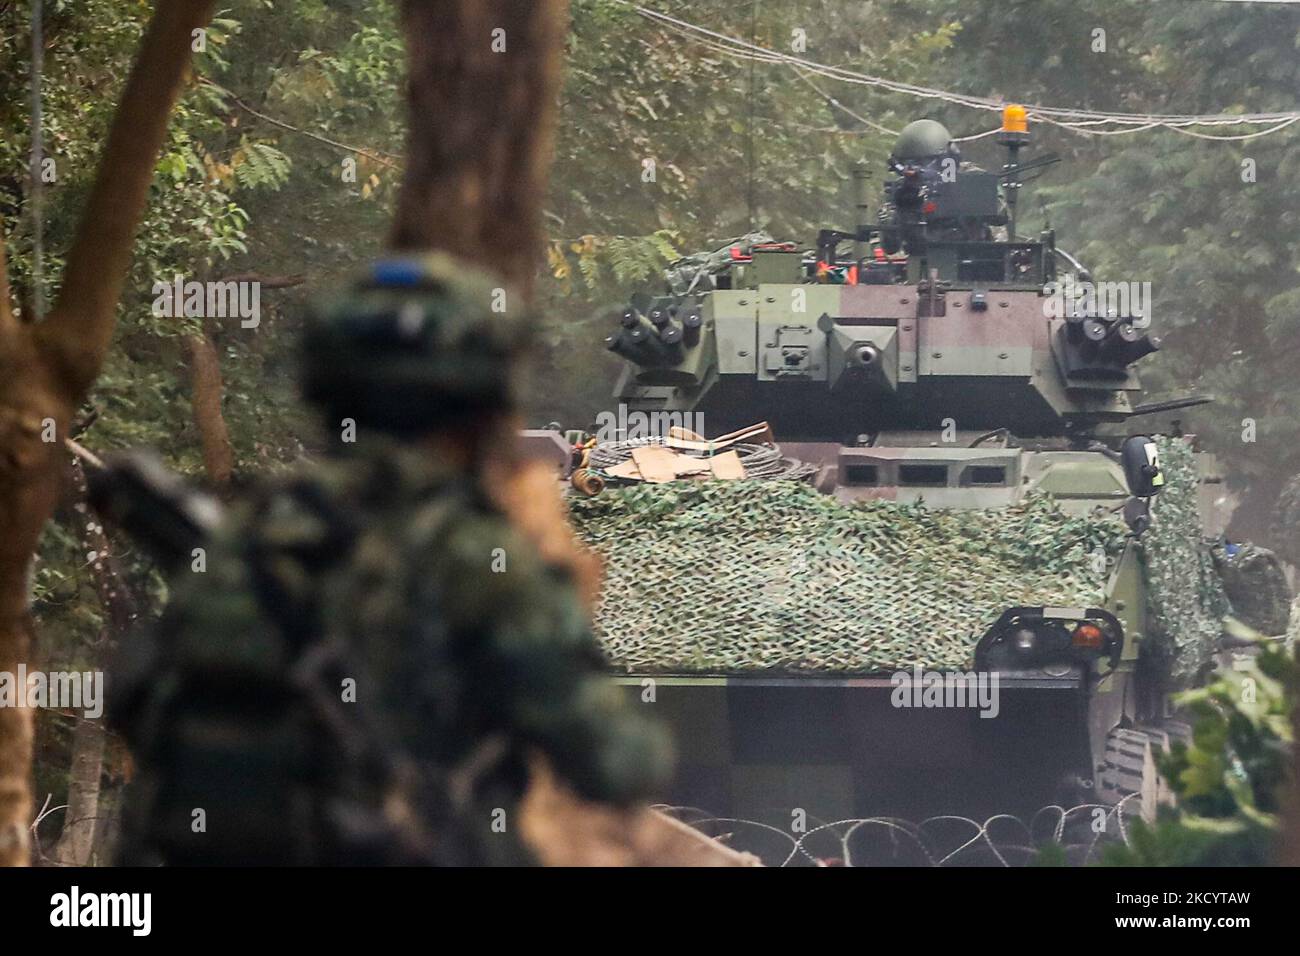 Des soldats avec un lanceur RPG et des mitrailleuses en place alors que les véhicules blindés cm-34 approchent, lors d'un exercice d'amélioration de la préparation de l'armée en prévision du nouvel an chinois, dans un contexte d'escalade des tensions chinoises sur l'île. (Photo de CEng Shou Yi/NurPhoto) Banque D'Images